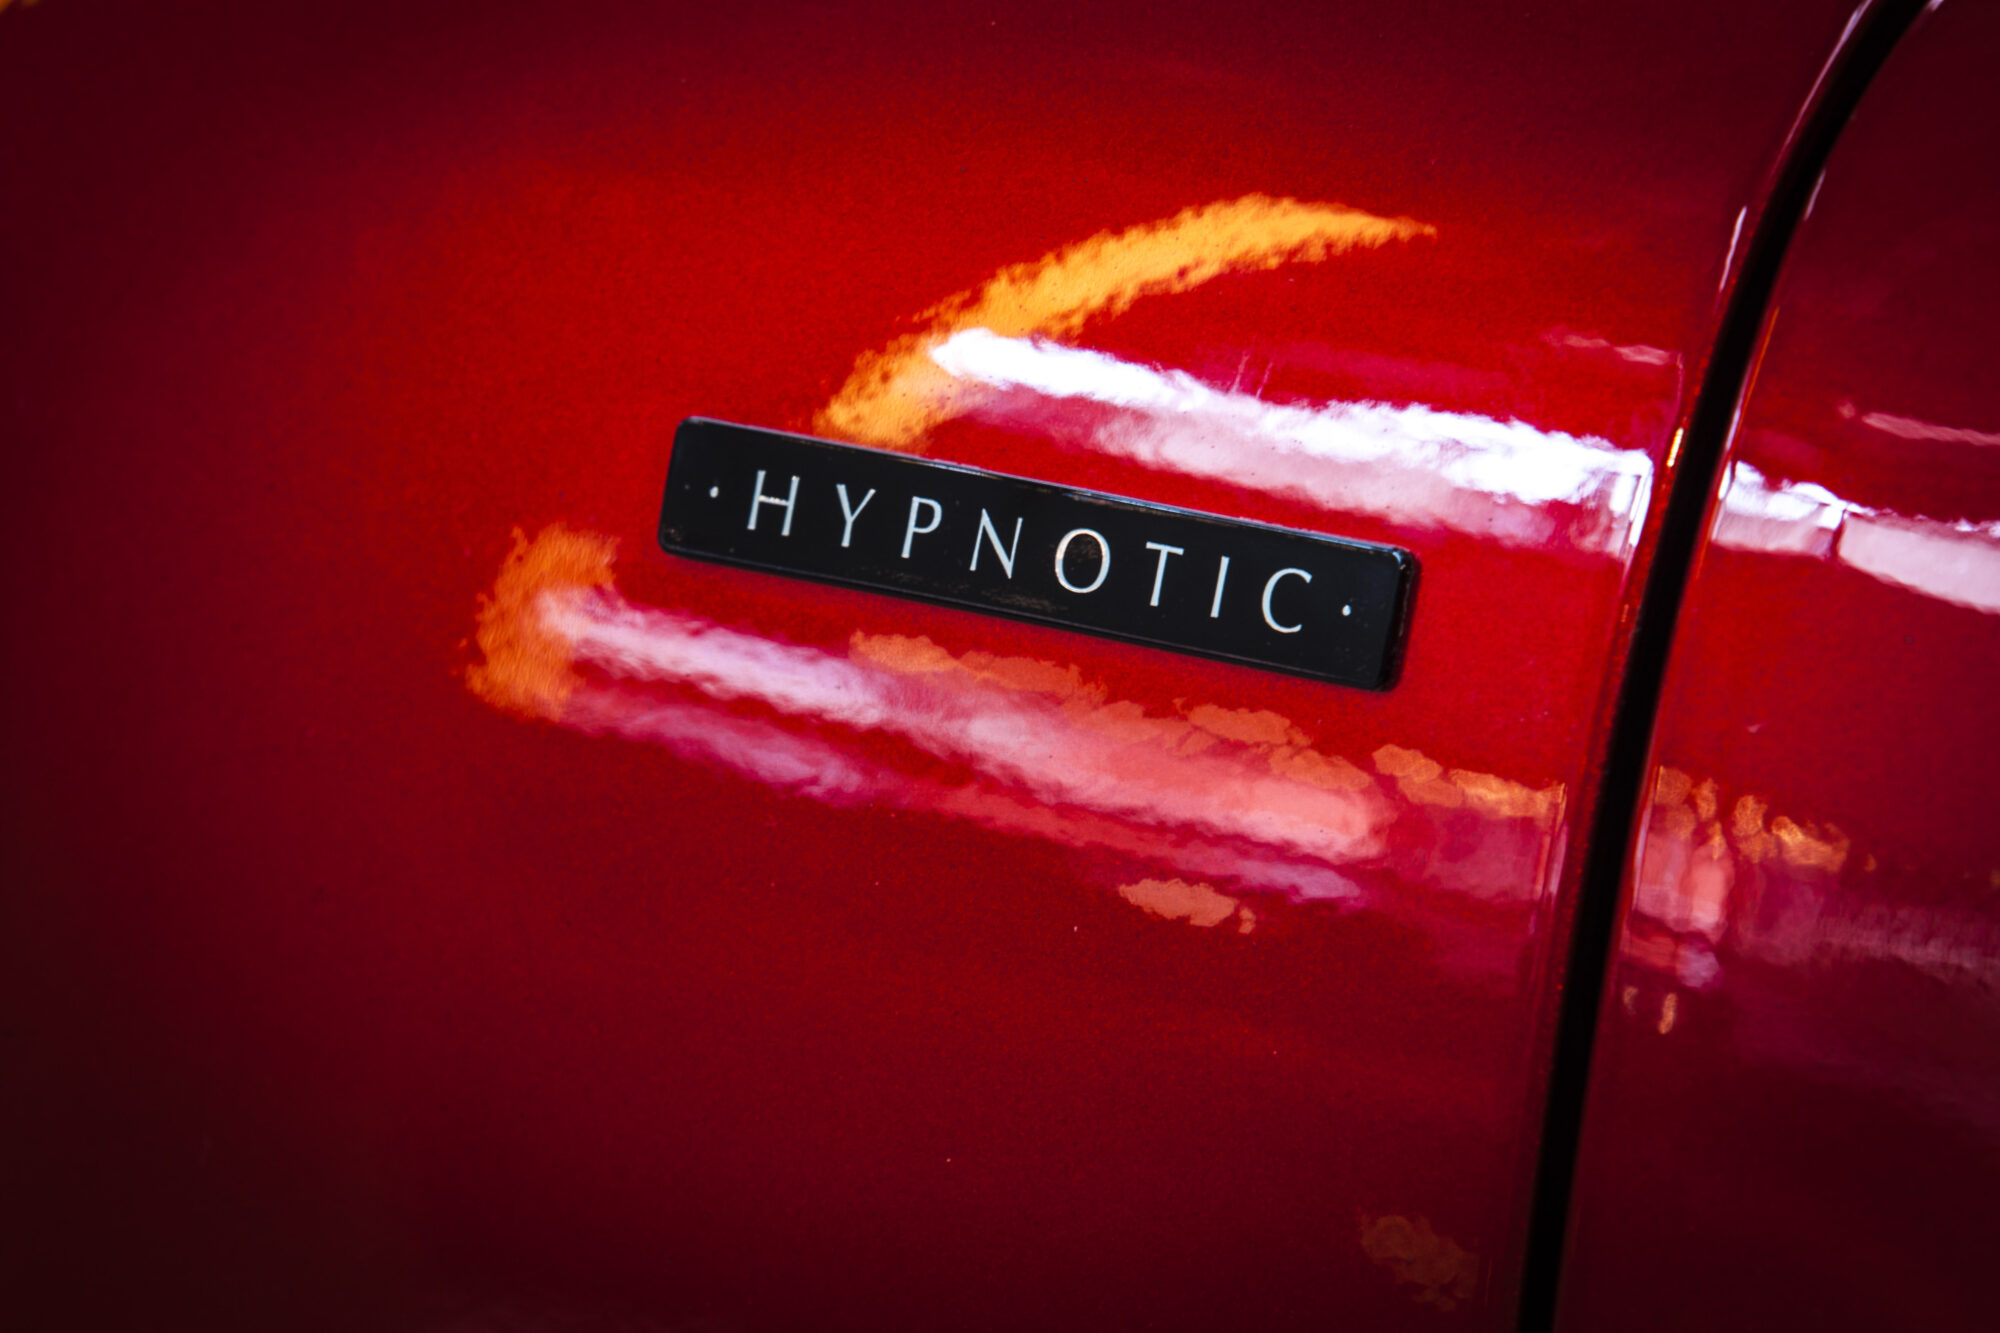 Serie Limitata Hypnotic - Captur & Kadjar